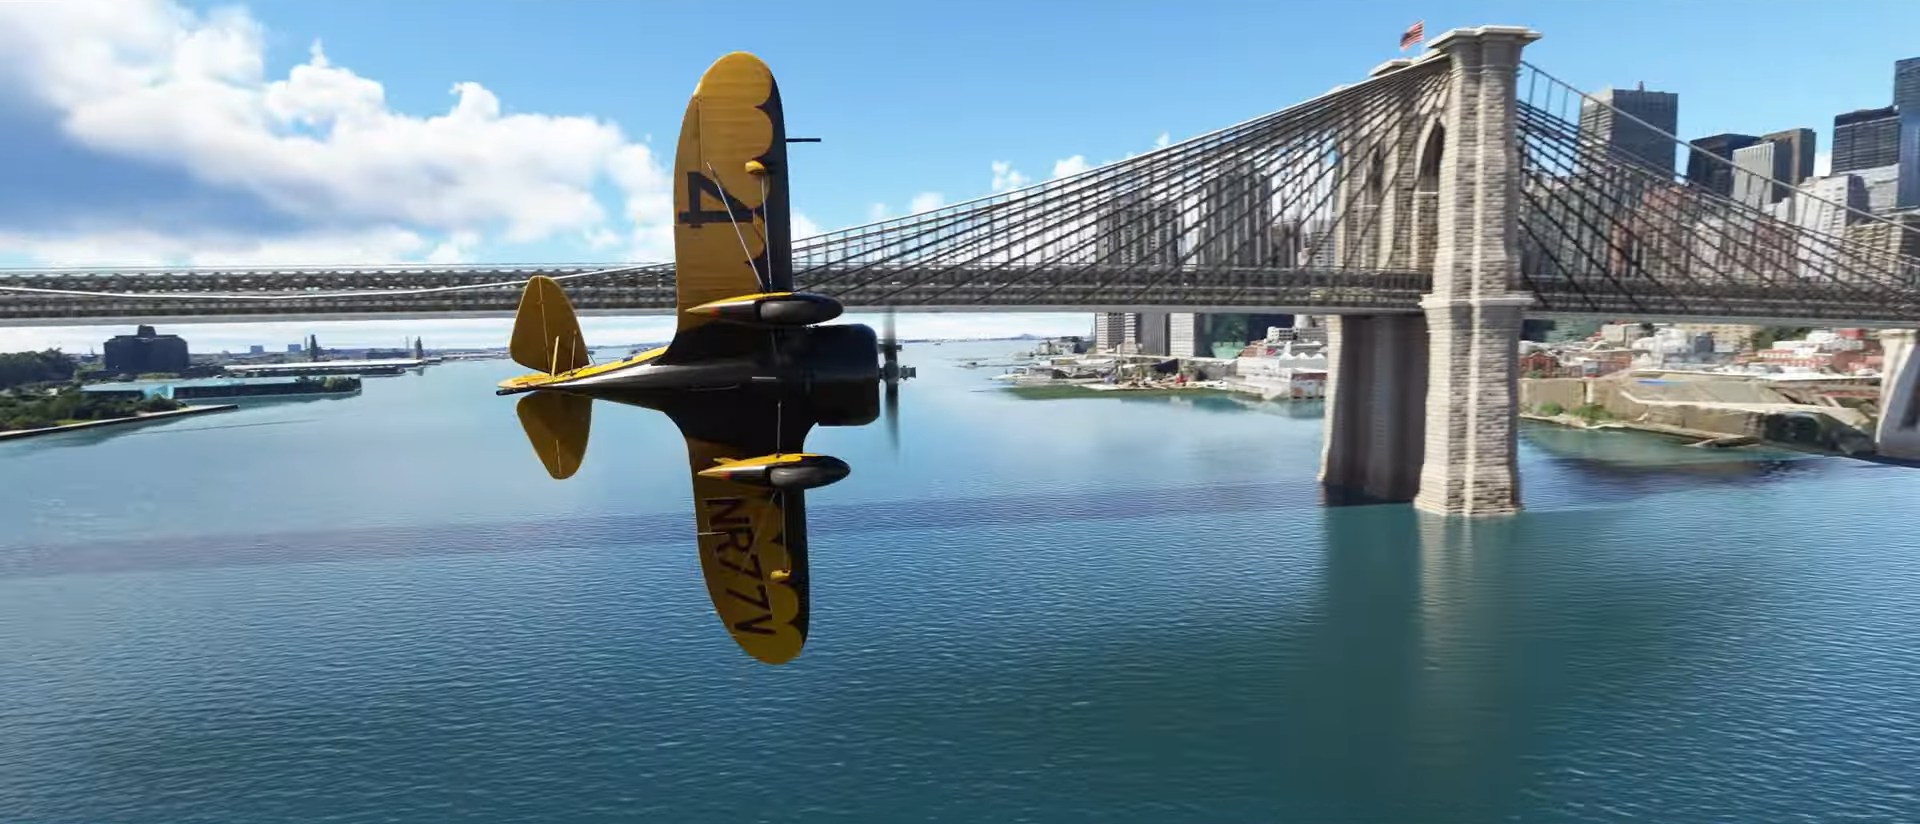 《微軟模擬飛行》40週年紀念版將於今年11月上線